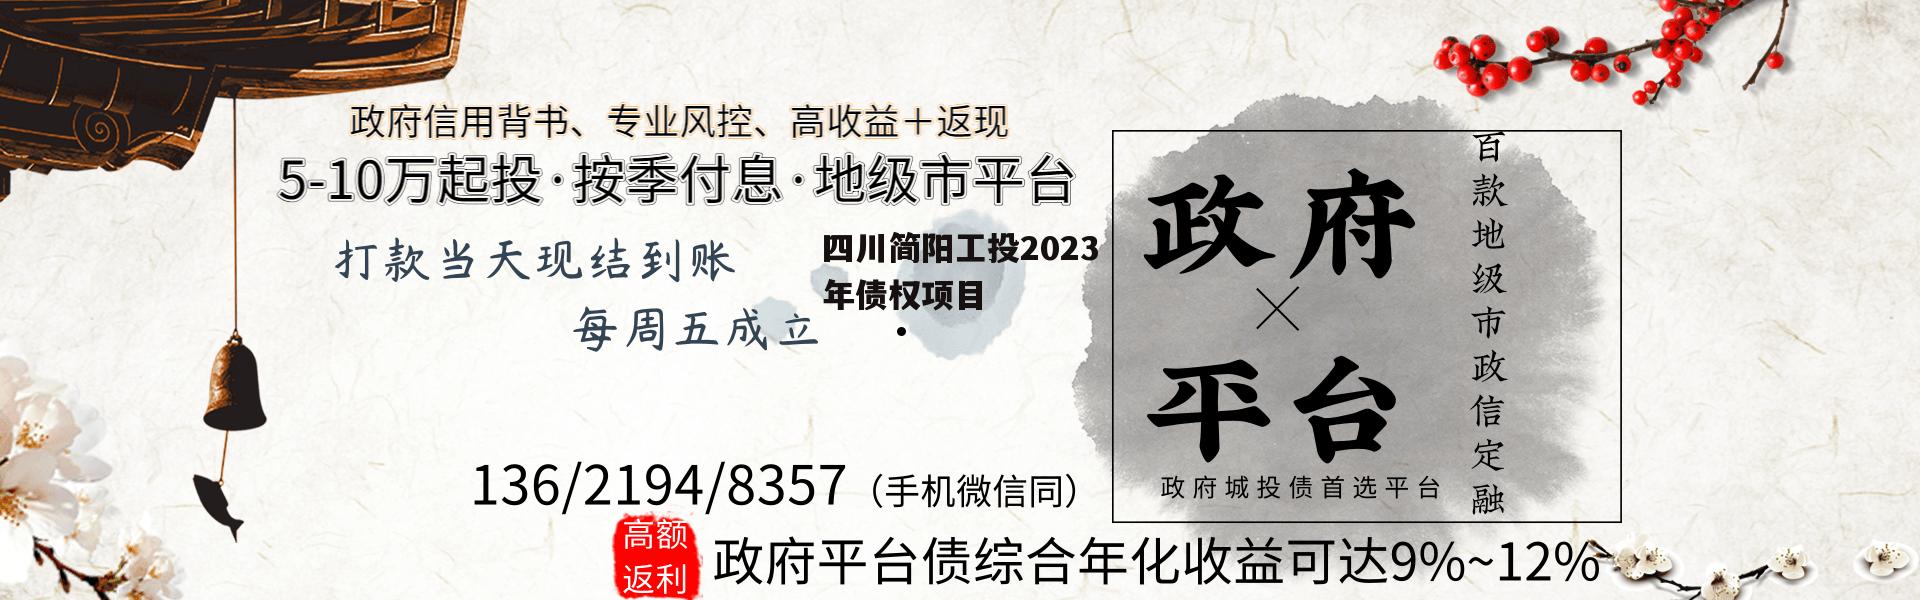 四川简阳工投2023年债权项目